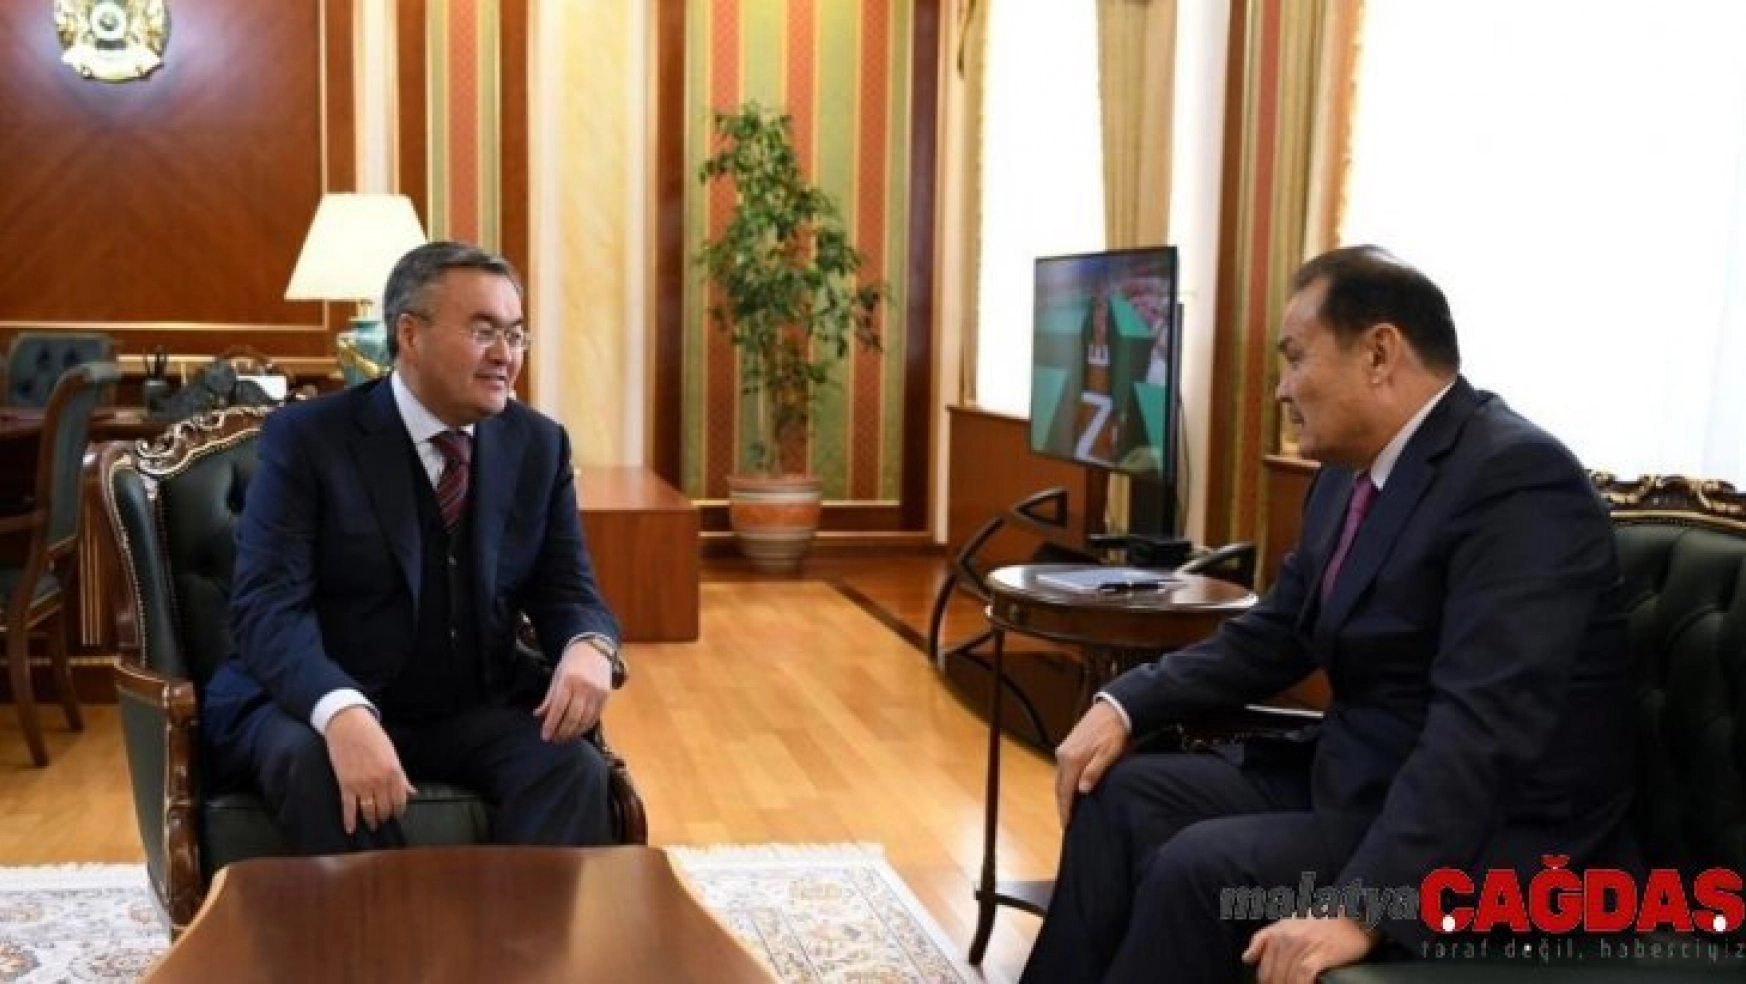 Türk Konseyi Genel Sekreteri, Kazakistan Dışişleri Bakanı ile bir araya geldi